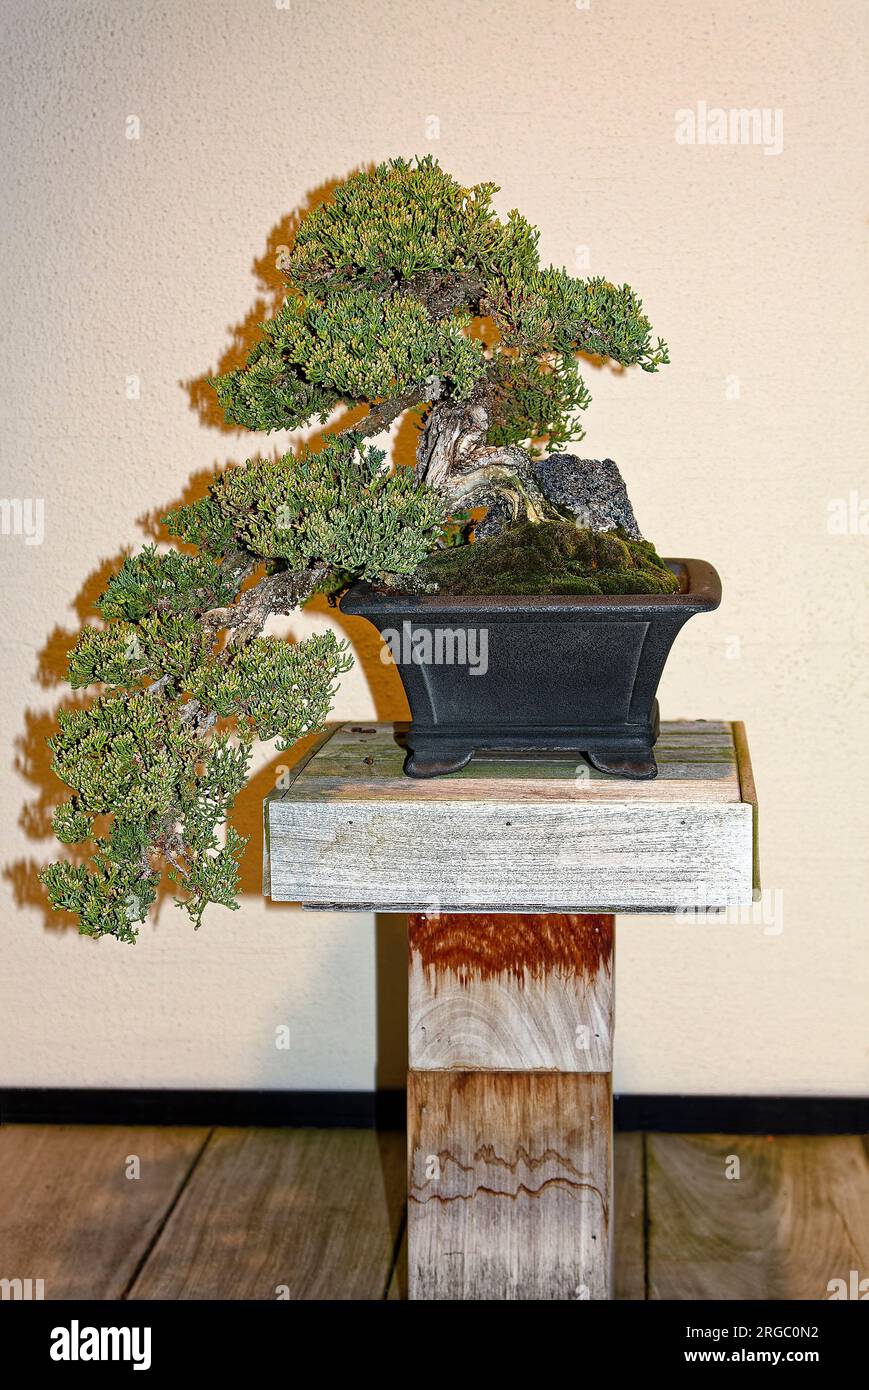 Pianta di bonsai; addestrata, tecnica iniziata in Cina intorno al 700 d.C., sviluppata in Giappone, influenzata dal buddismo Zen, pentola poco profonda, minimalista, piccolo rustico Foto Stock